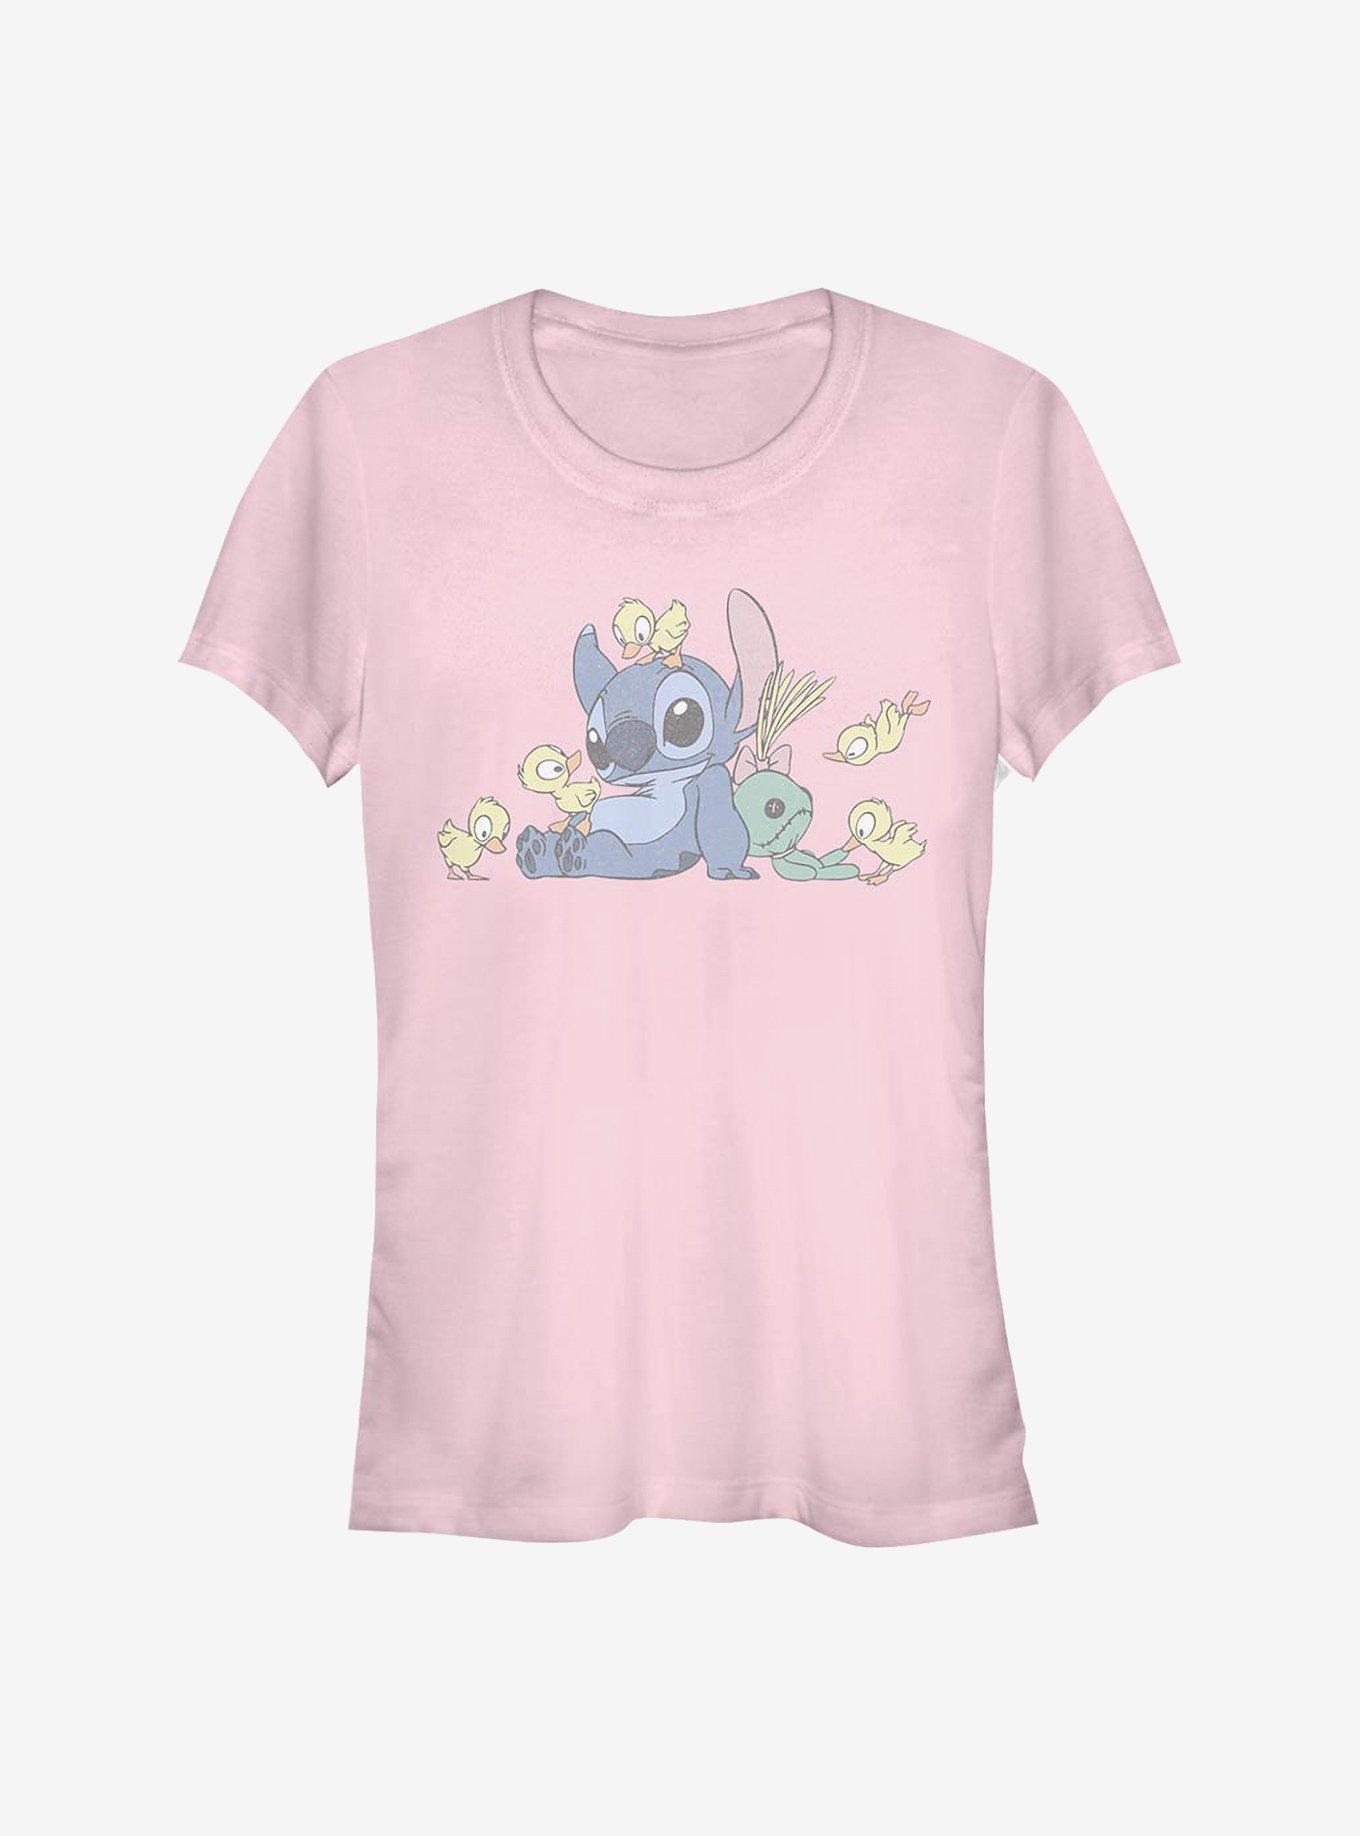 Disney Lilo & Stitch Ducky Kind Girls T-Shirt